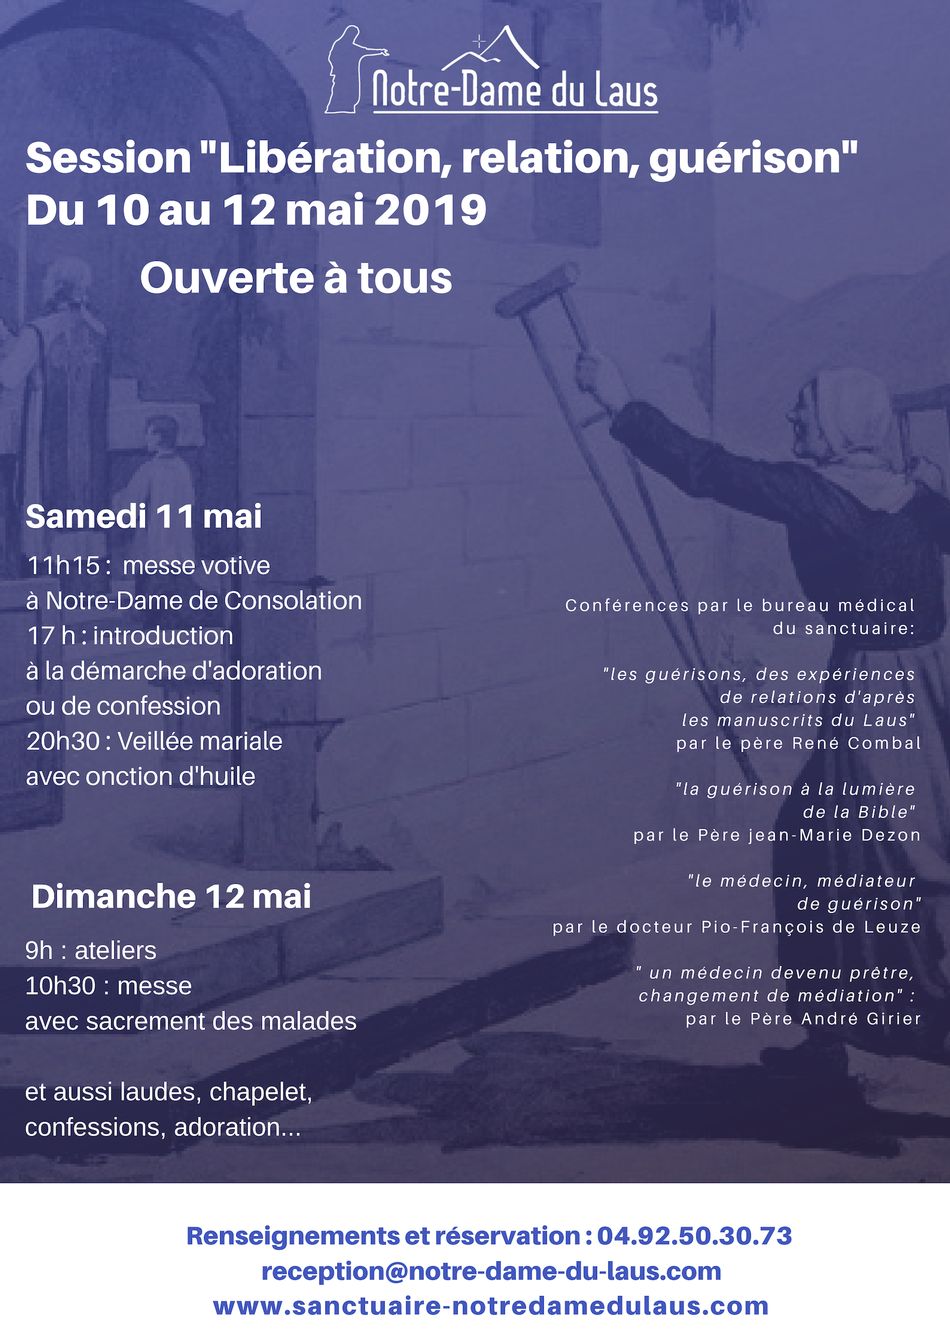 Session “Libération, relation, guérison : un chemin de vie !” du 10 au 12 mai 2019 au Sanctuaire Notre-Dame du Laus (05)